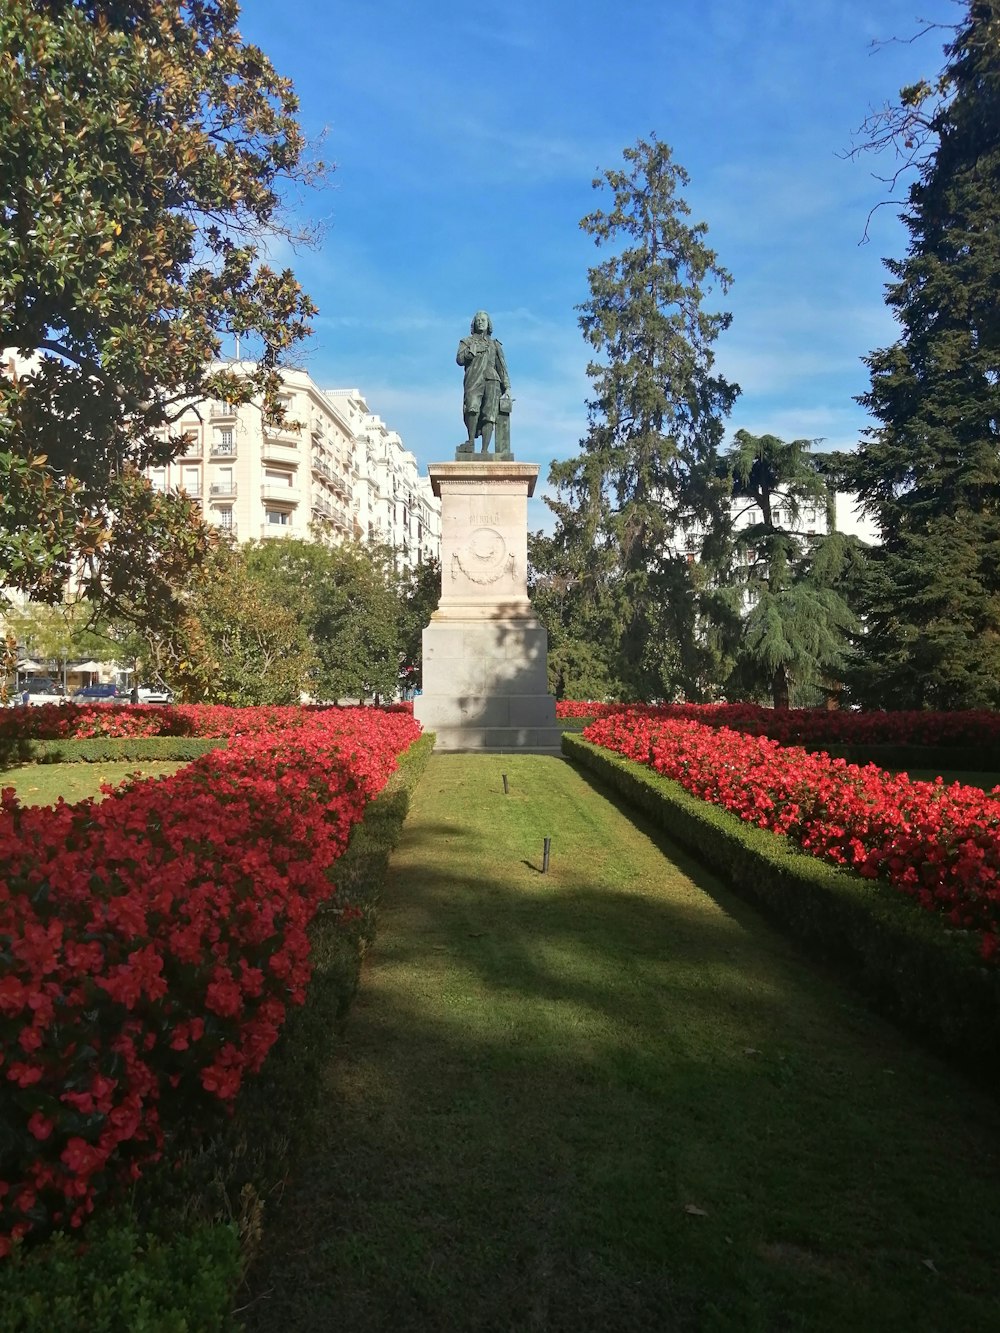 Una estatua en medio de un jardín de flores